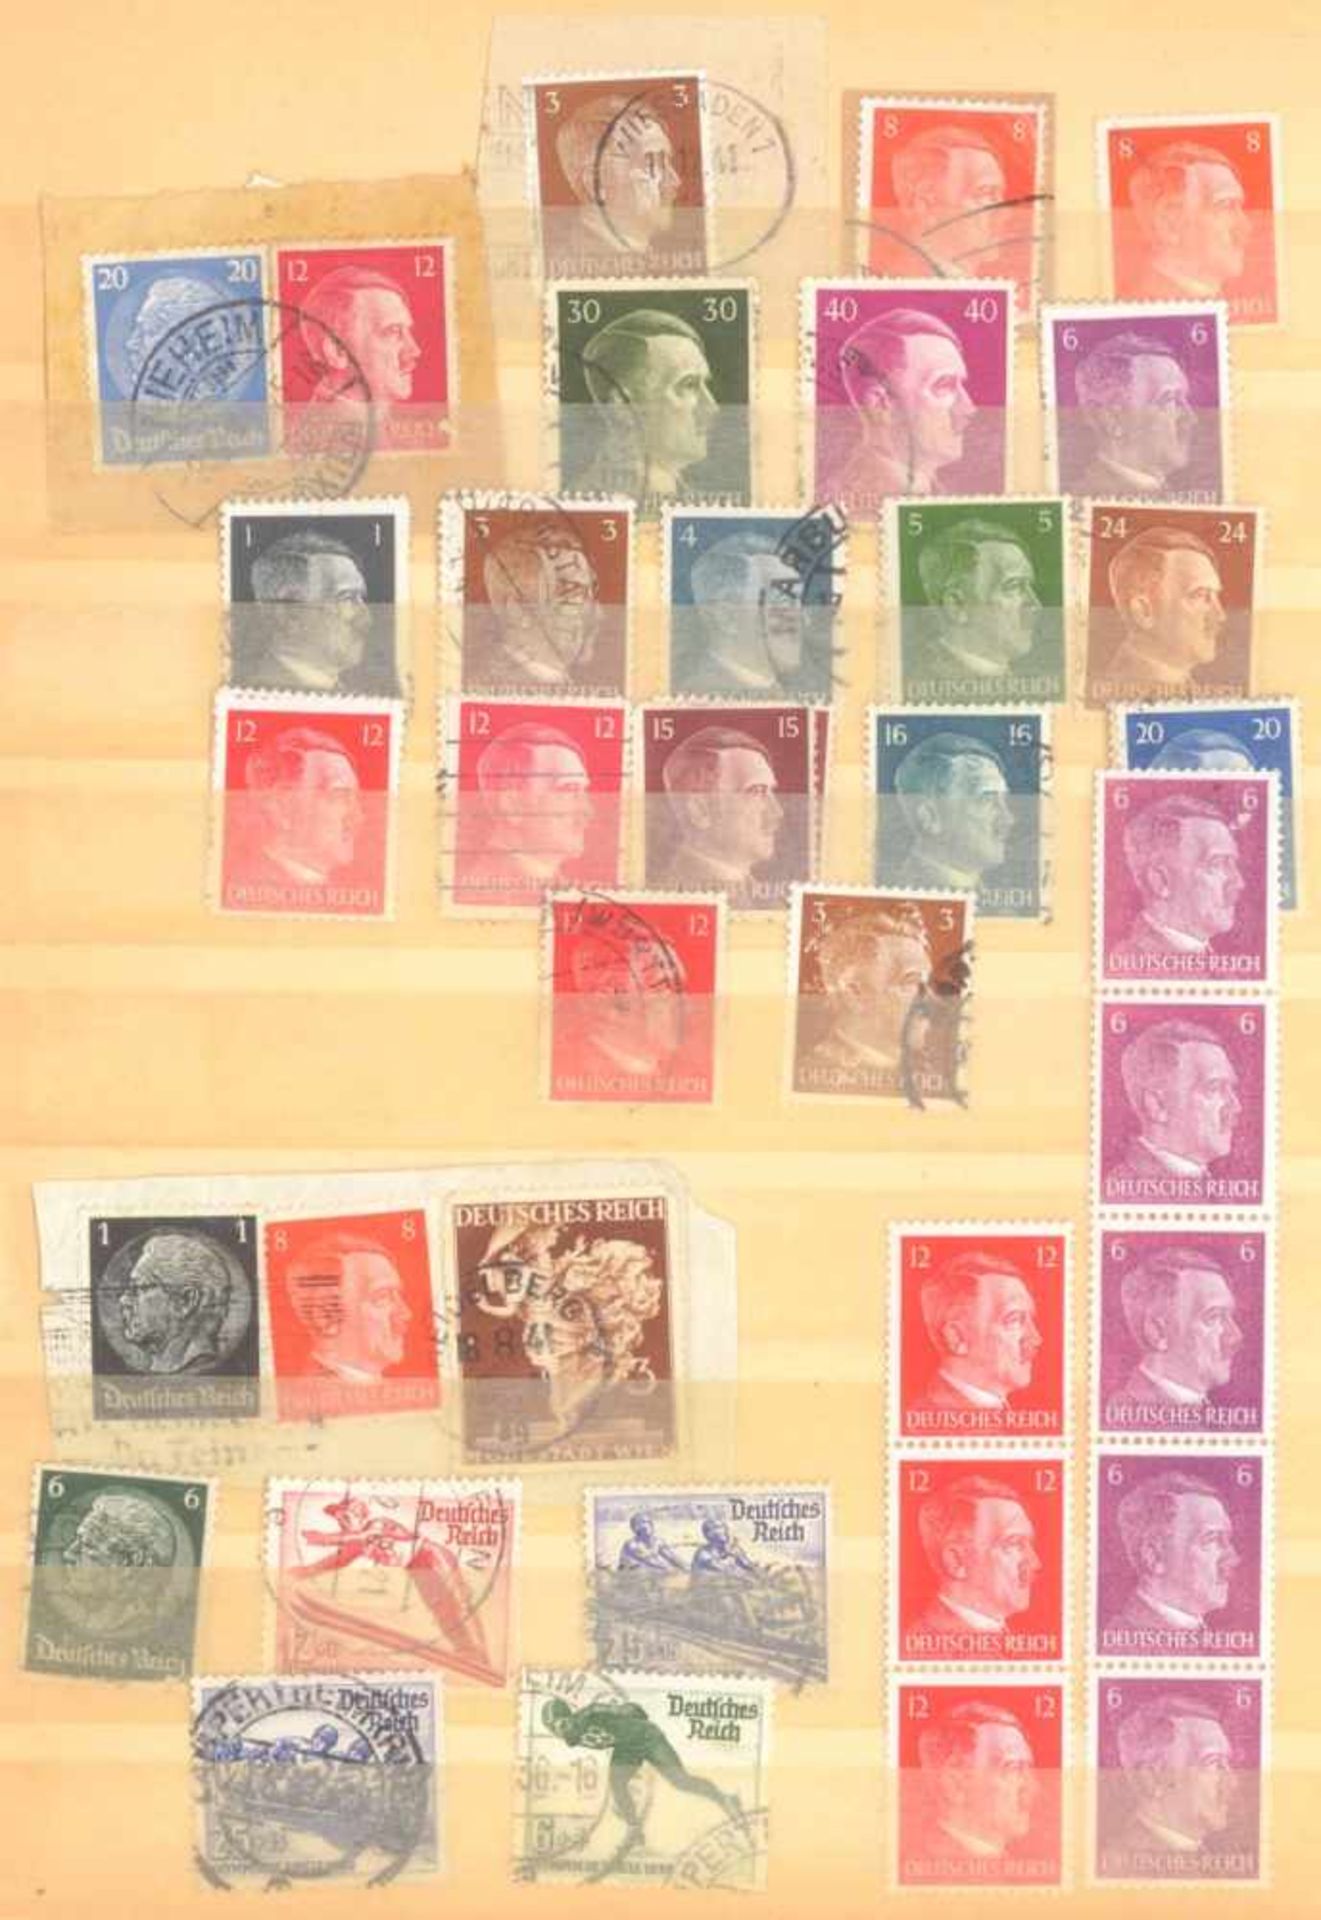 FRANKENTHALER NACHLASSuriger Nachlass mit Briefmarken und Belegen. Dabei DeutschesReich, altes - Image 18 of 46